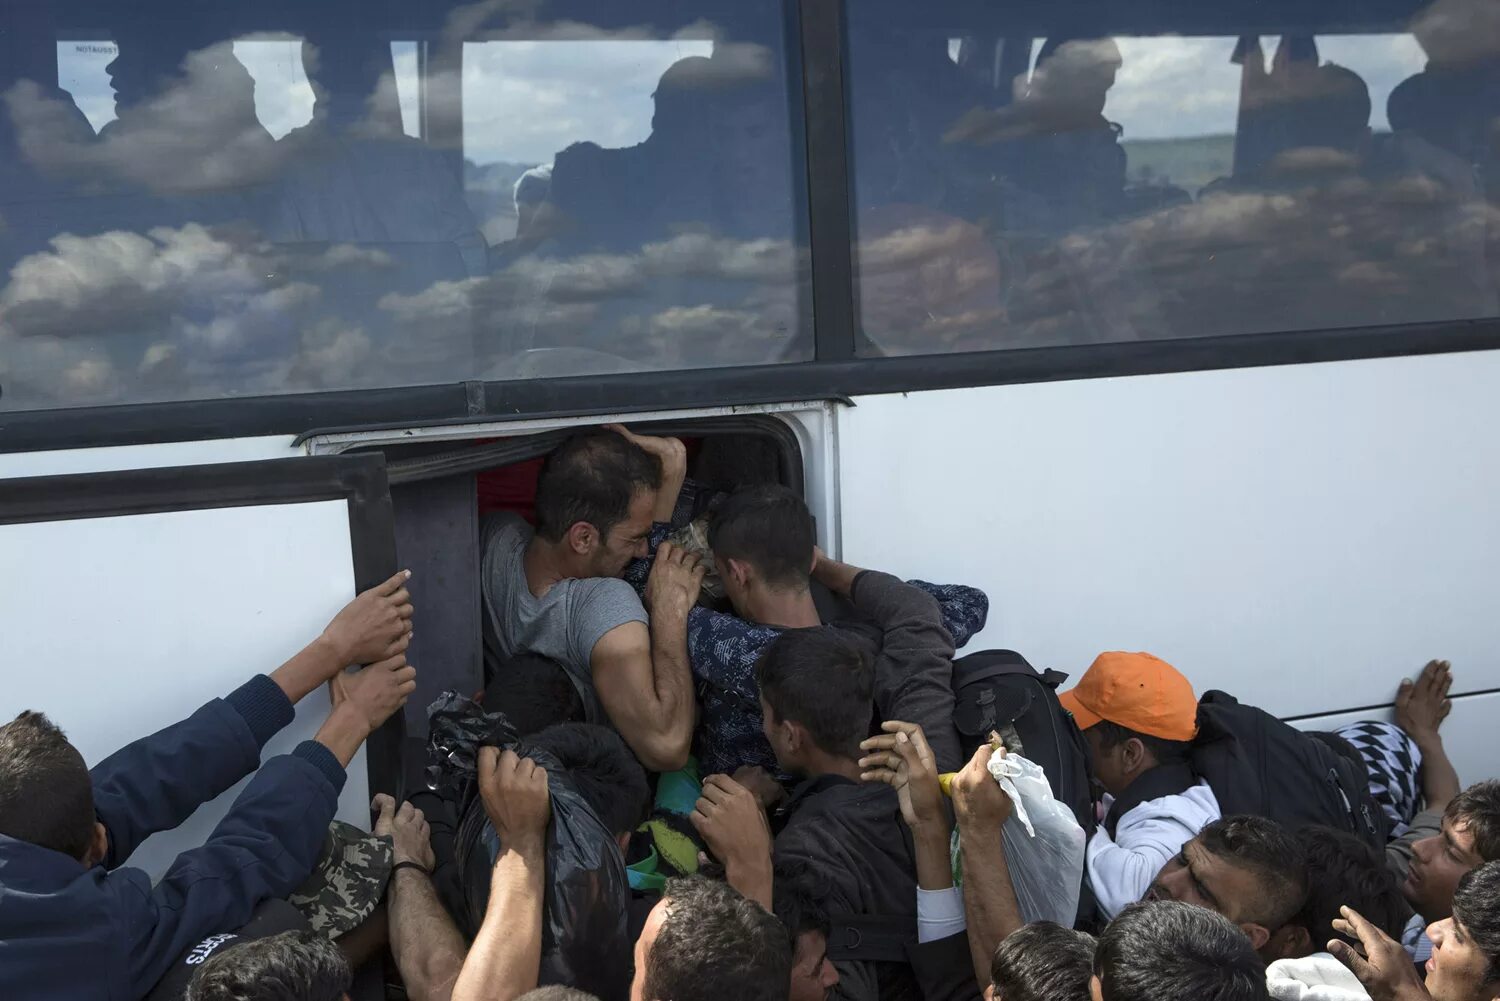 Европа нападение. Мигранты в автобусе. Нелегалы в автобусе. Гастарбайтеры в общественном транспорте. Автобусы с беженцами.